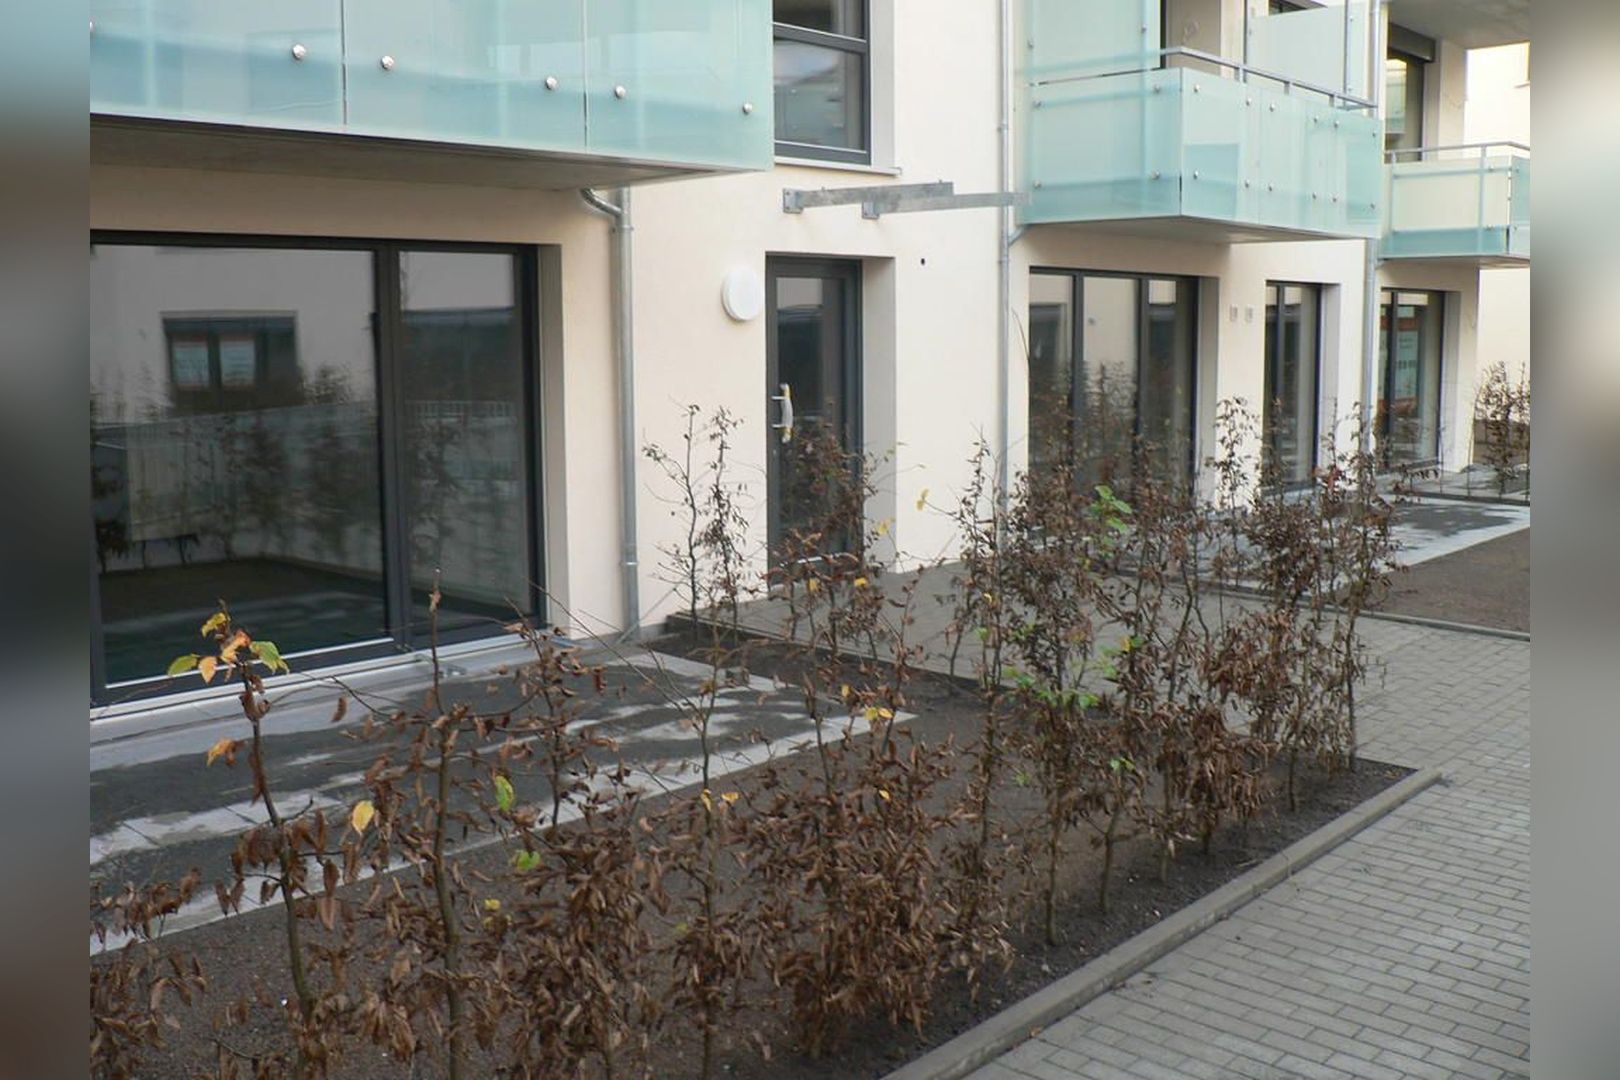 Immobilie Nr.Hilden 042 - 2-Raum-Gartenwohnung in ruhiger Innenhoflage - Bild 8.jpg